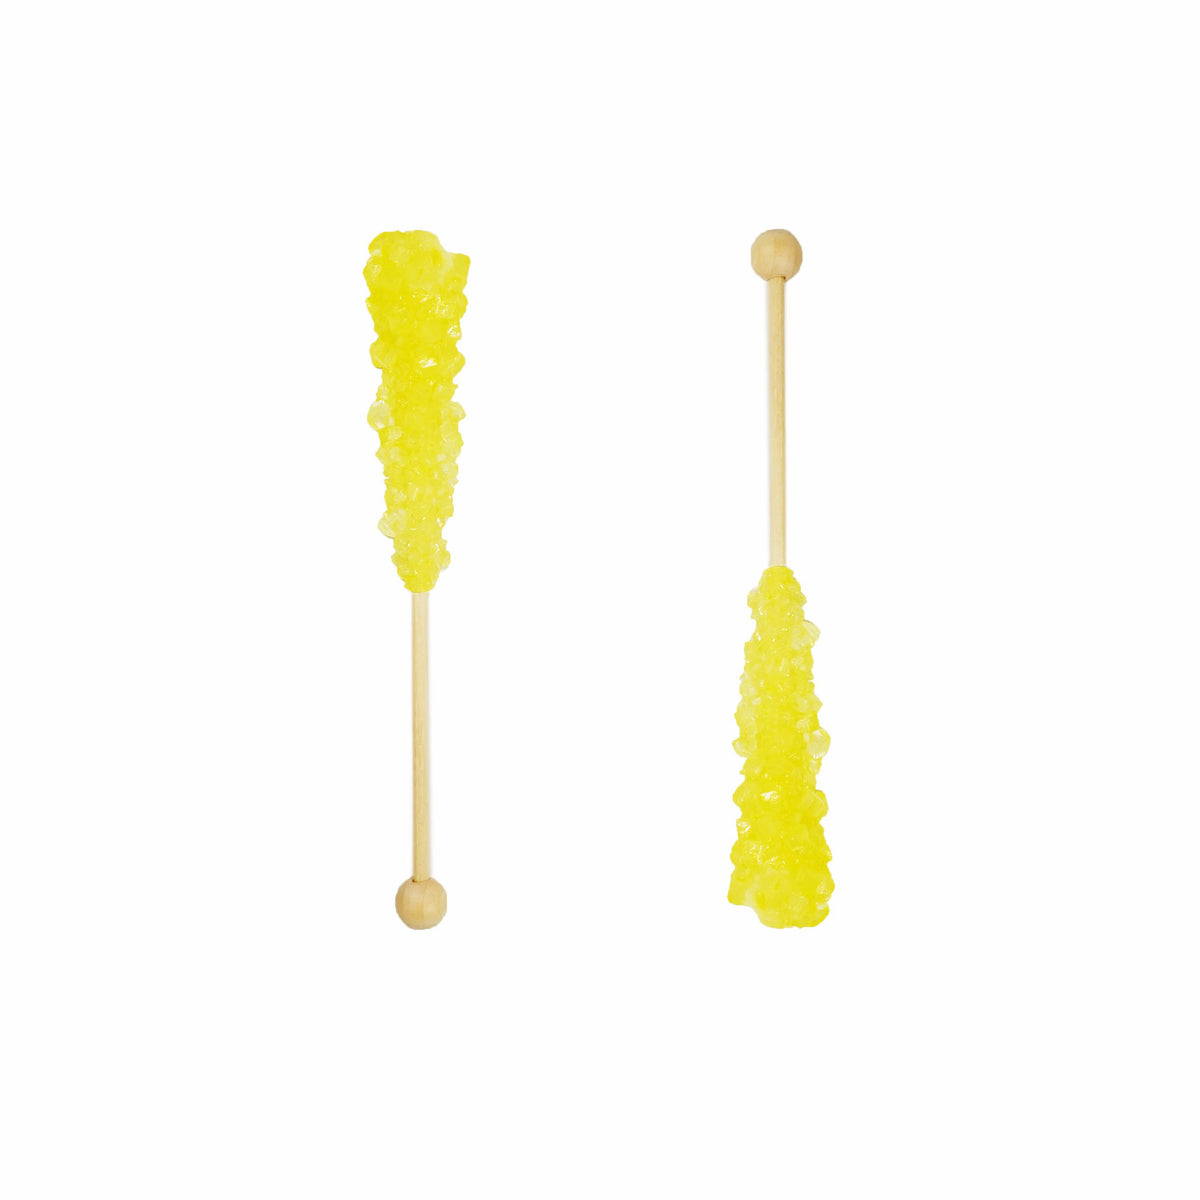 Jewels Rock Sugar Sticks — Durian (Two Sticks in a box)